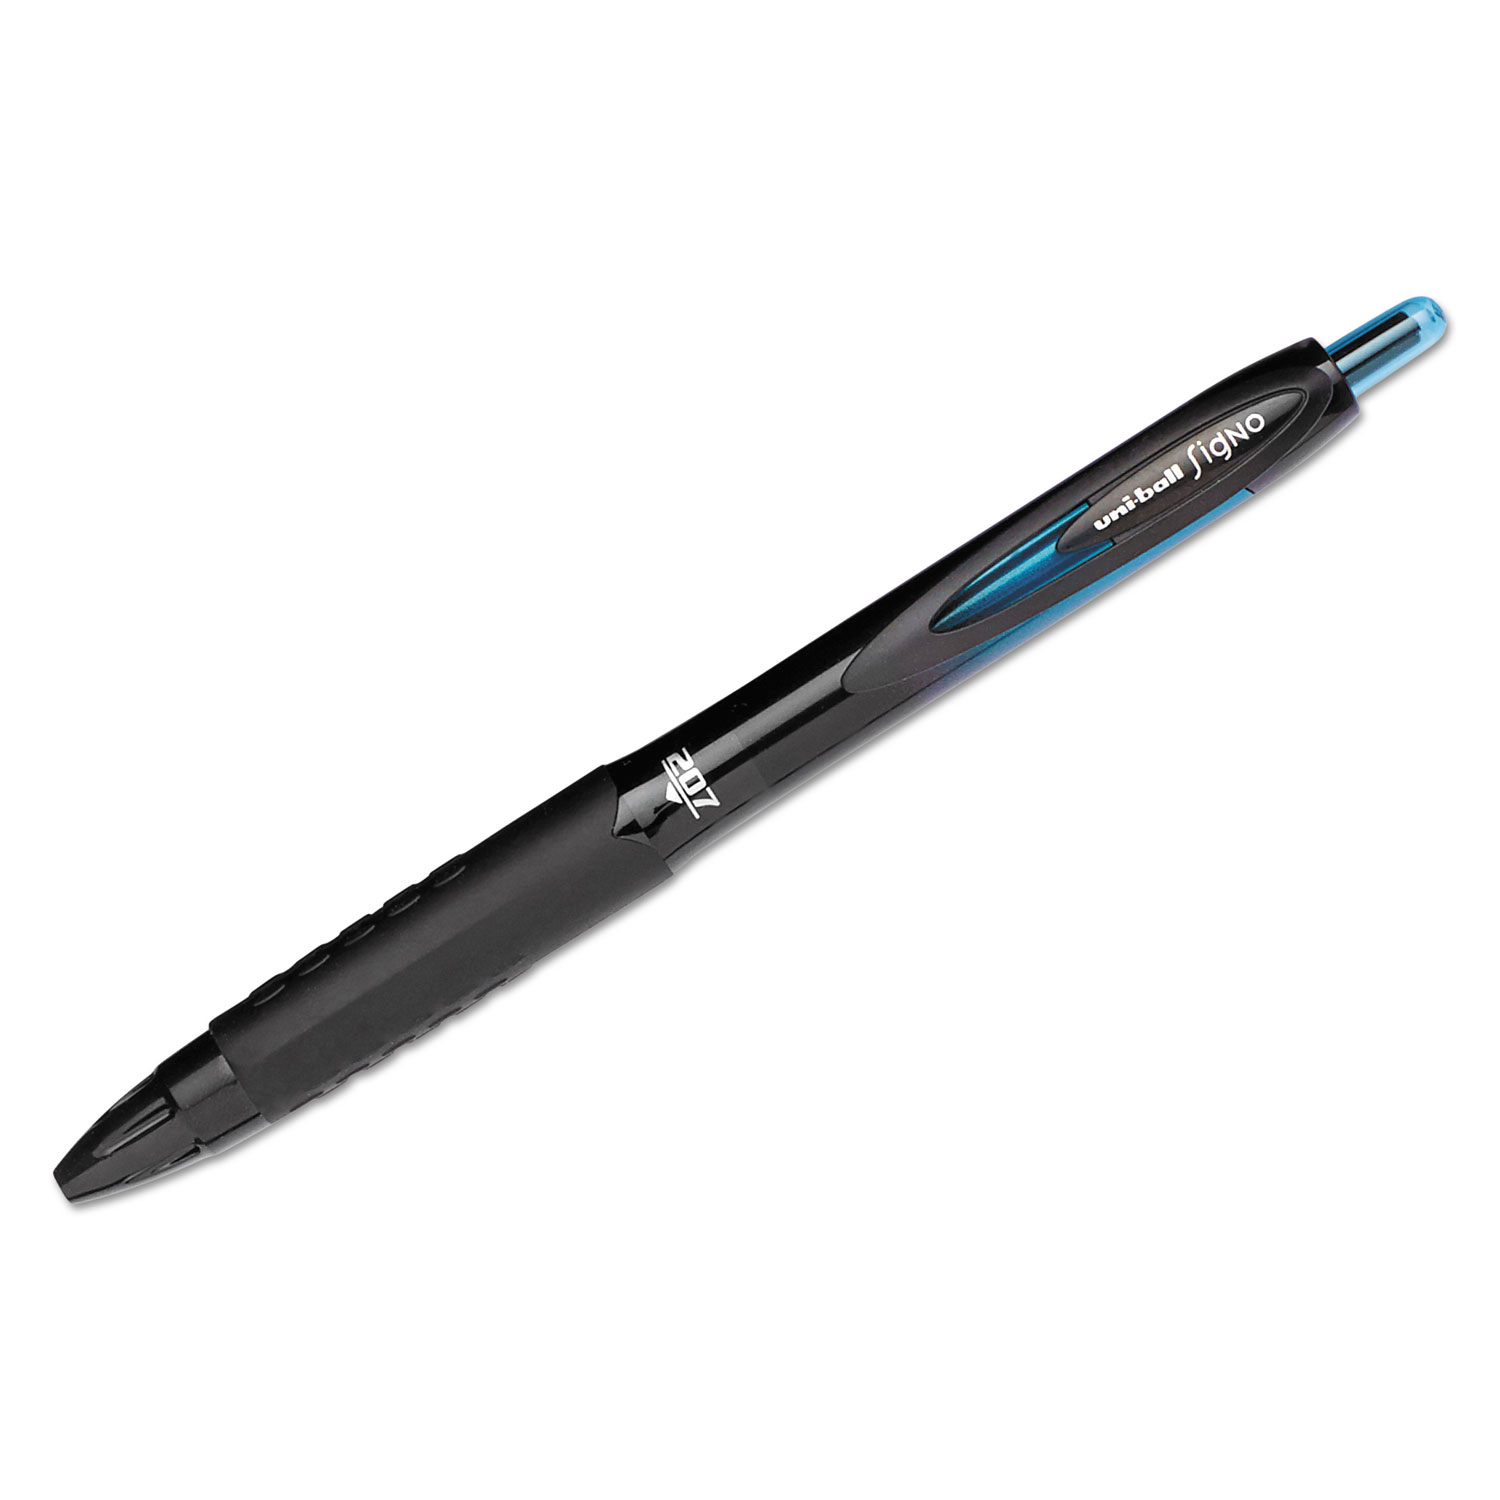  uni-ball 1837931 207 BLX Series Retractable Gel Pen, 0.7mm, Black Ink, Translucent Black Barrel (UBC1837931) 